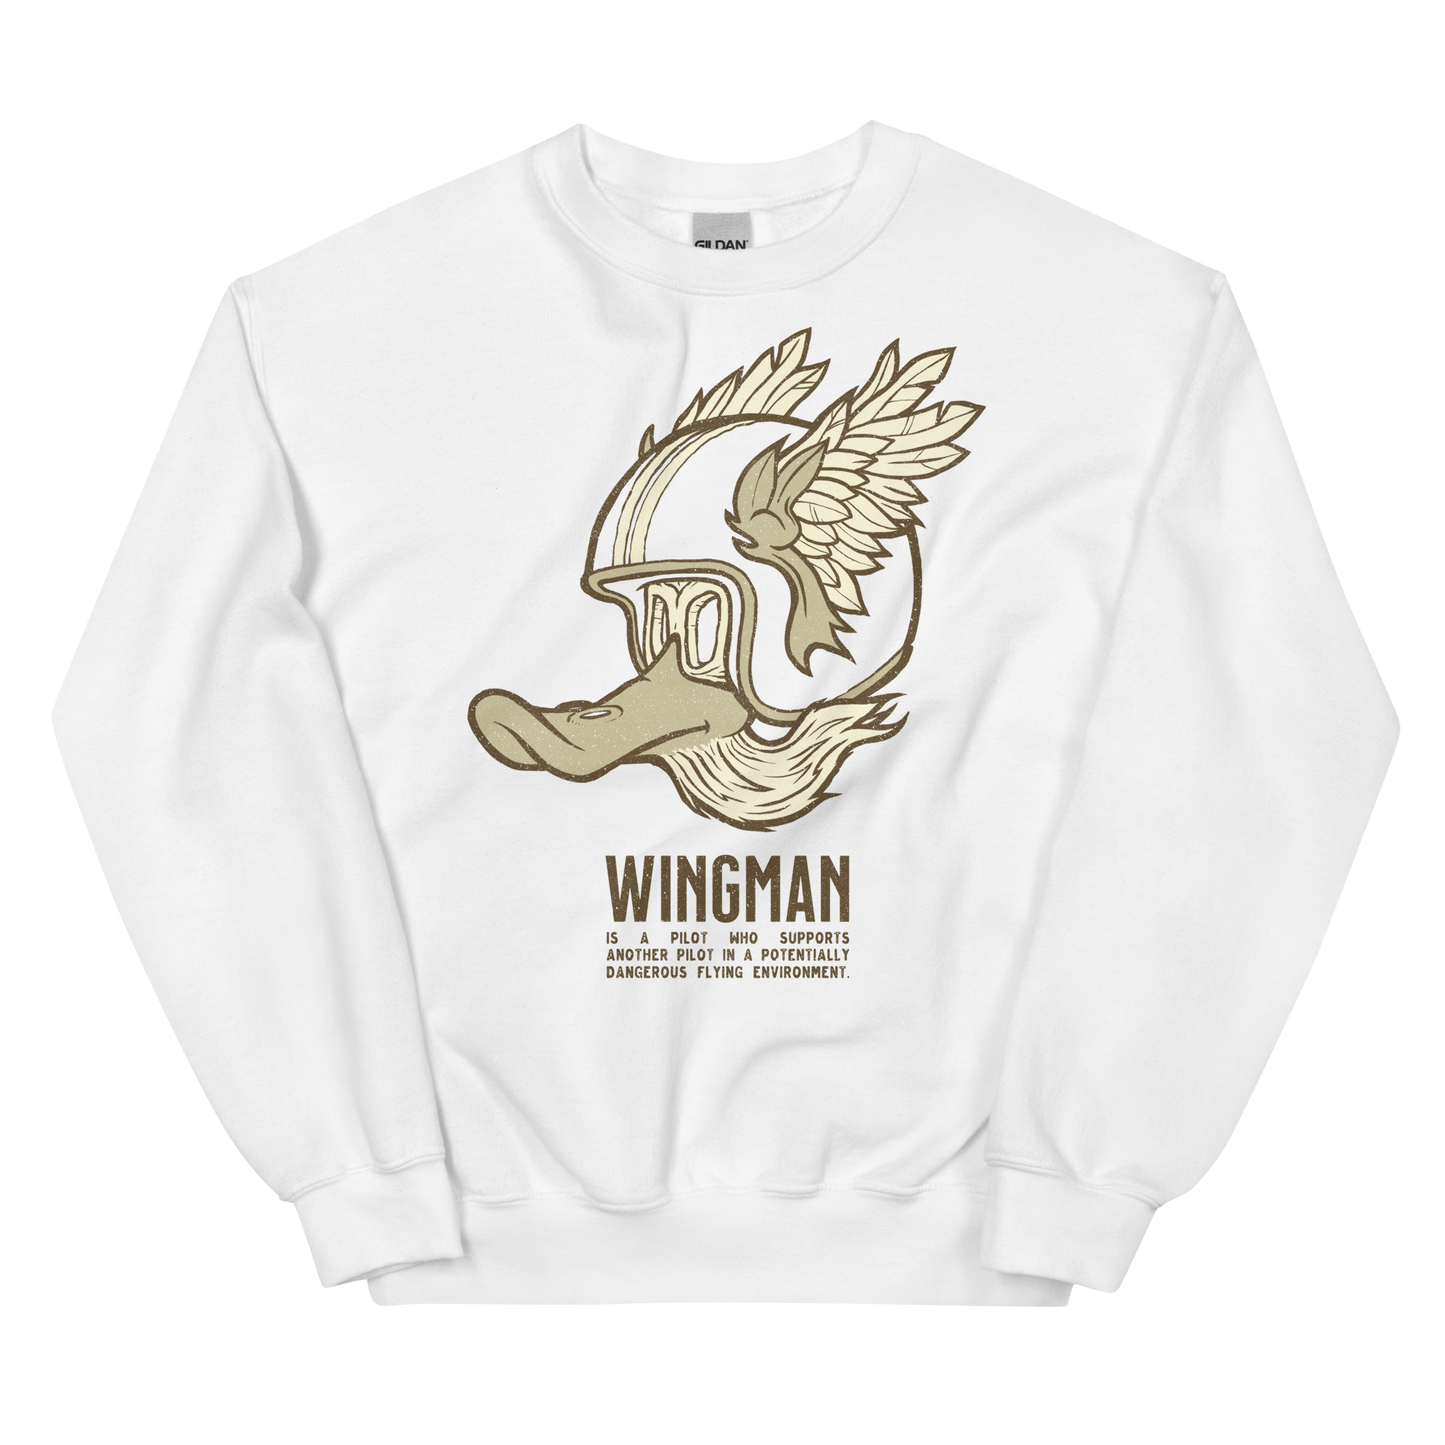 Wingman Motorcycle Sweatshirt